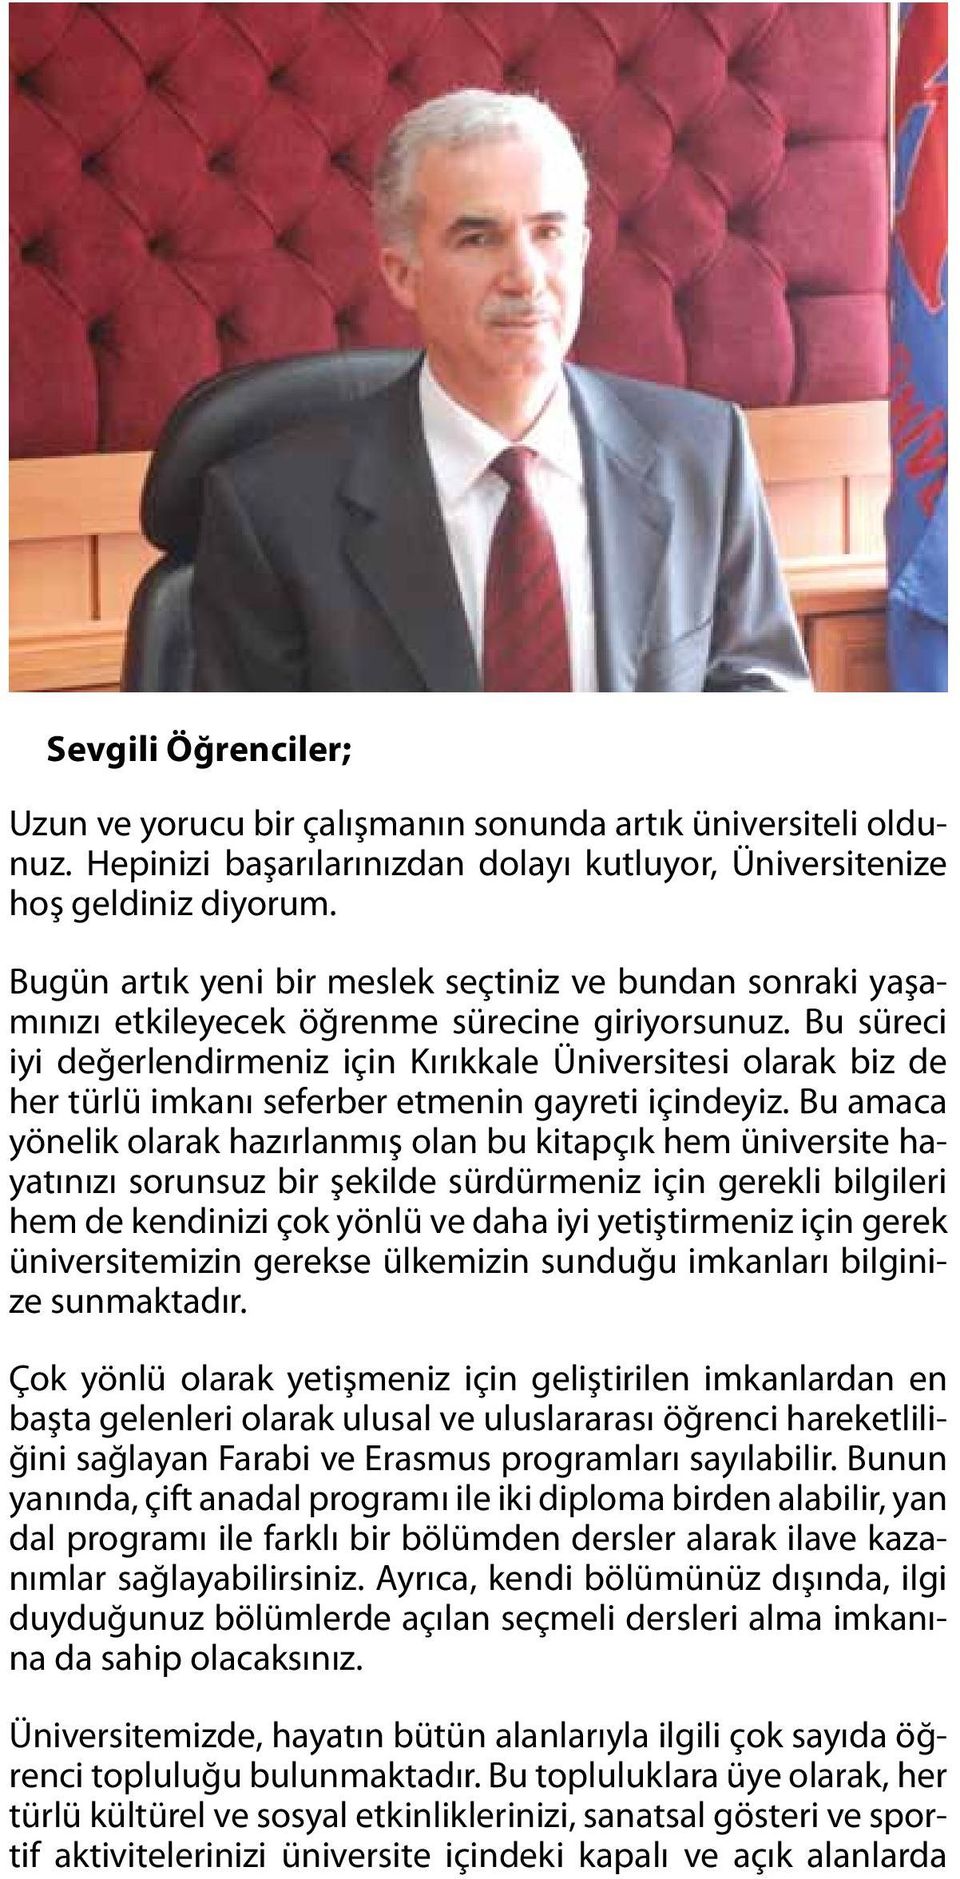 Bu süreci iyi değerlendirmeniz için Kırıkkale Üniversitesi olarak biz de her türlü imkanı seferber etmenin gayreti içindeyiz.